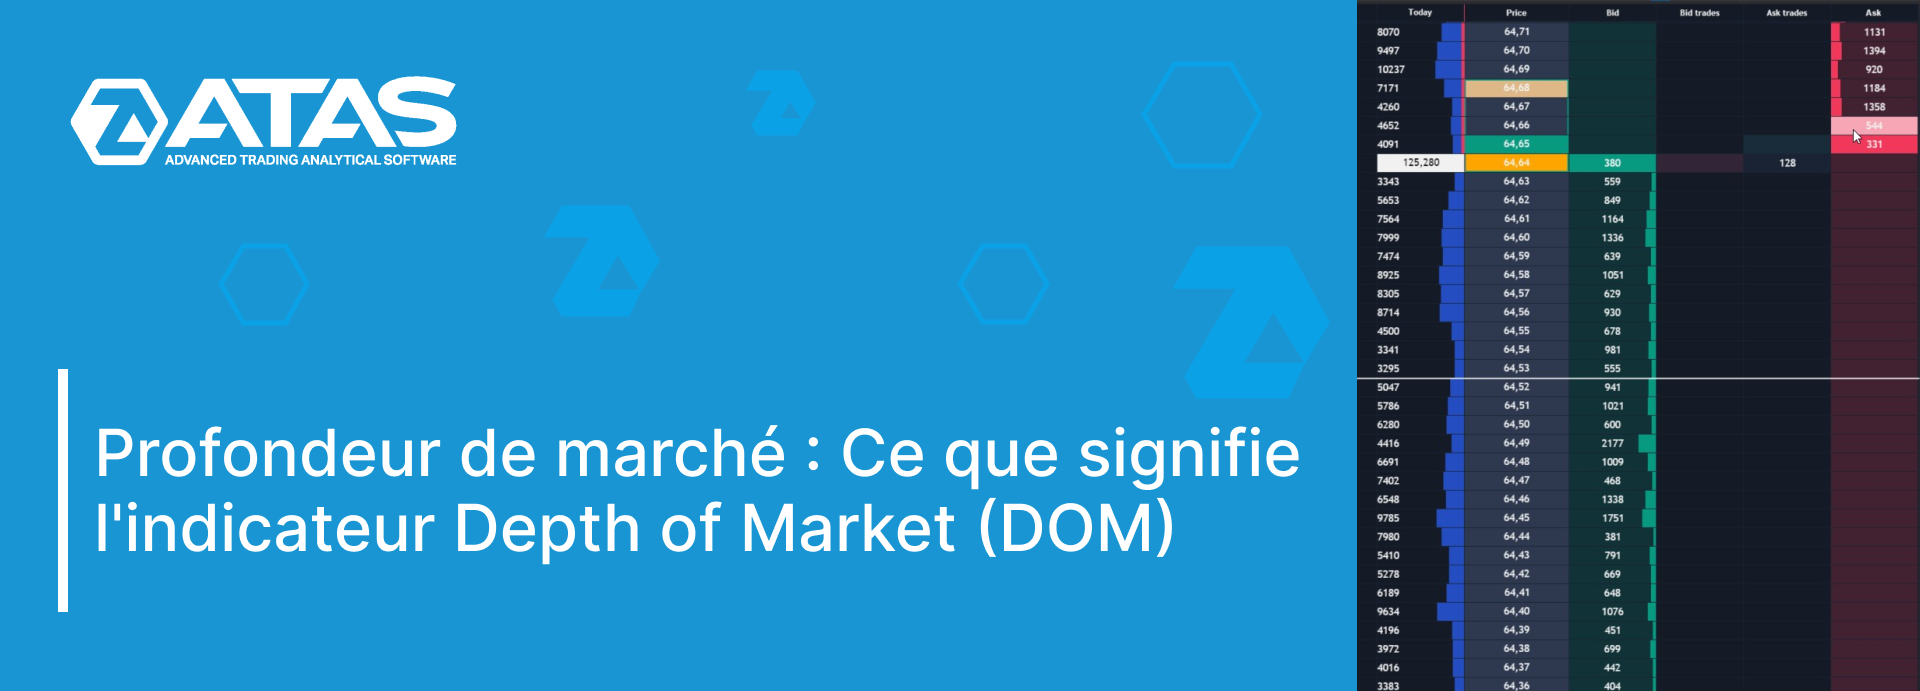 Ce que montre l'indicateur Depth of Market (DOM)